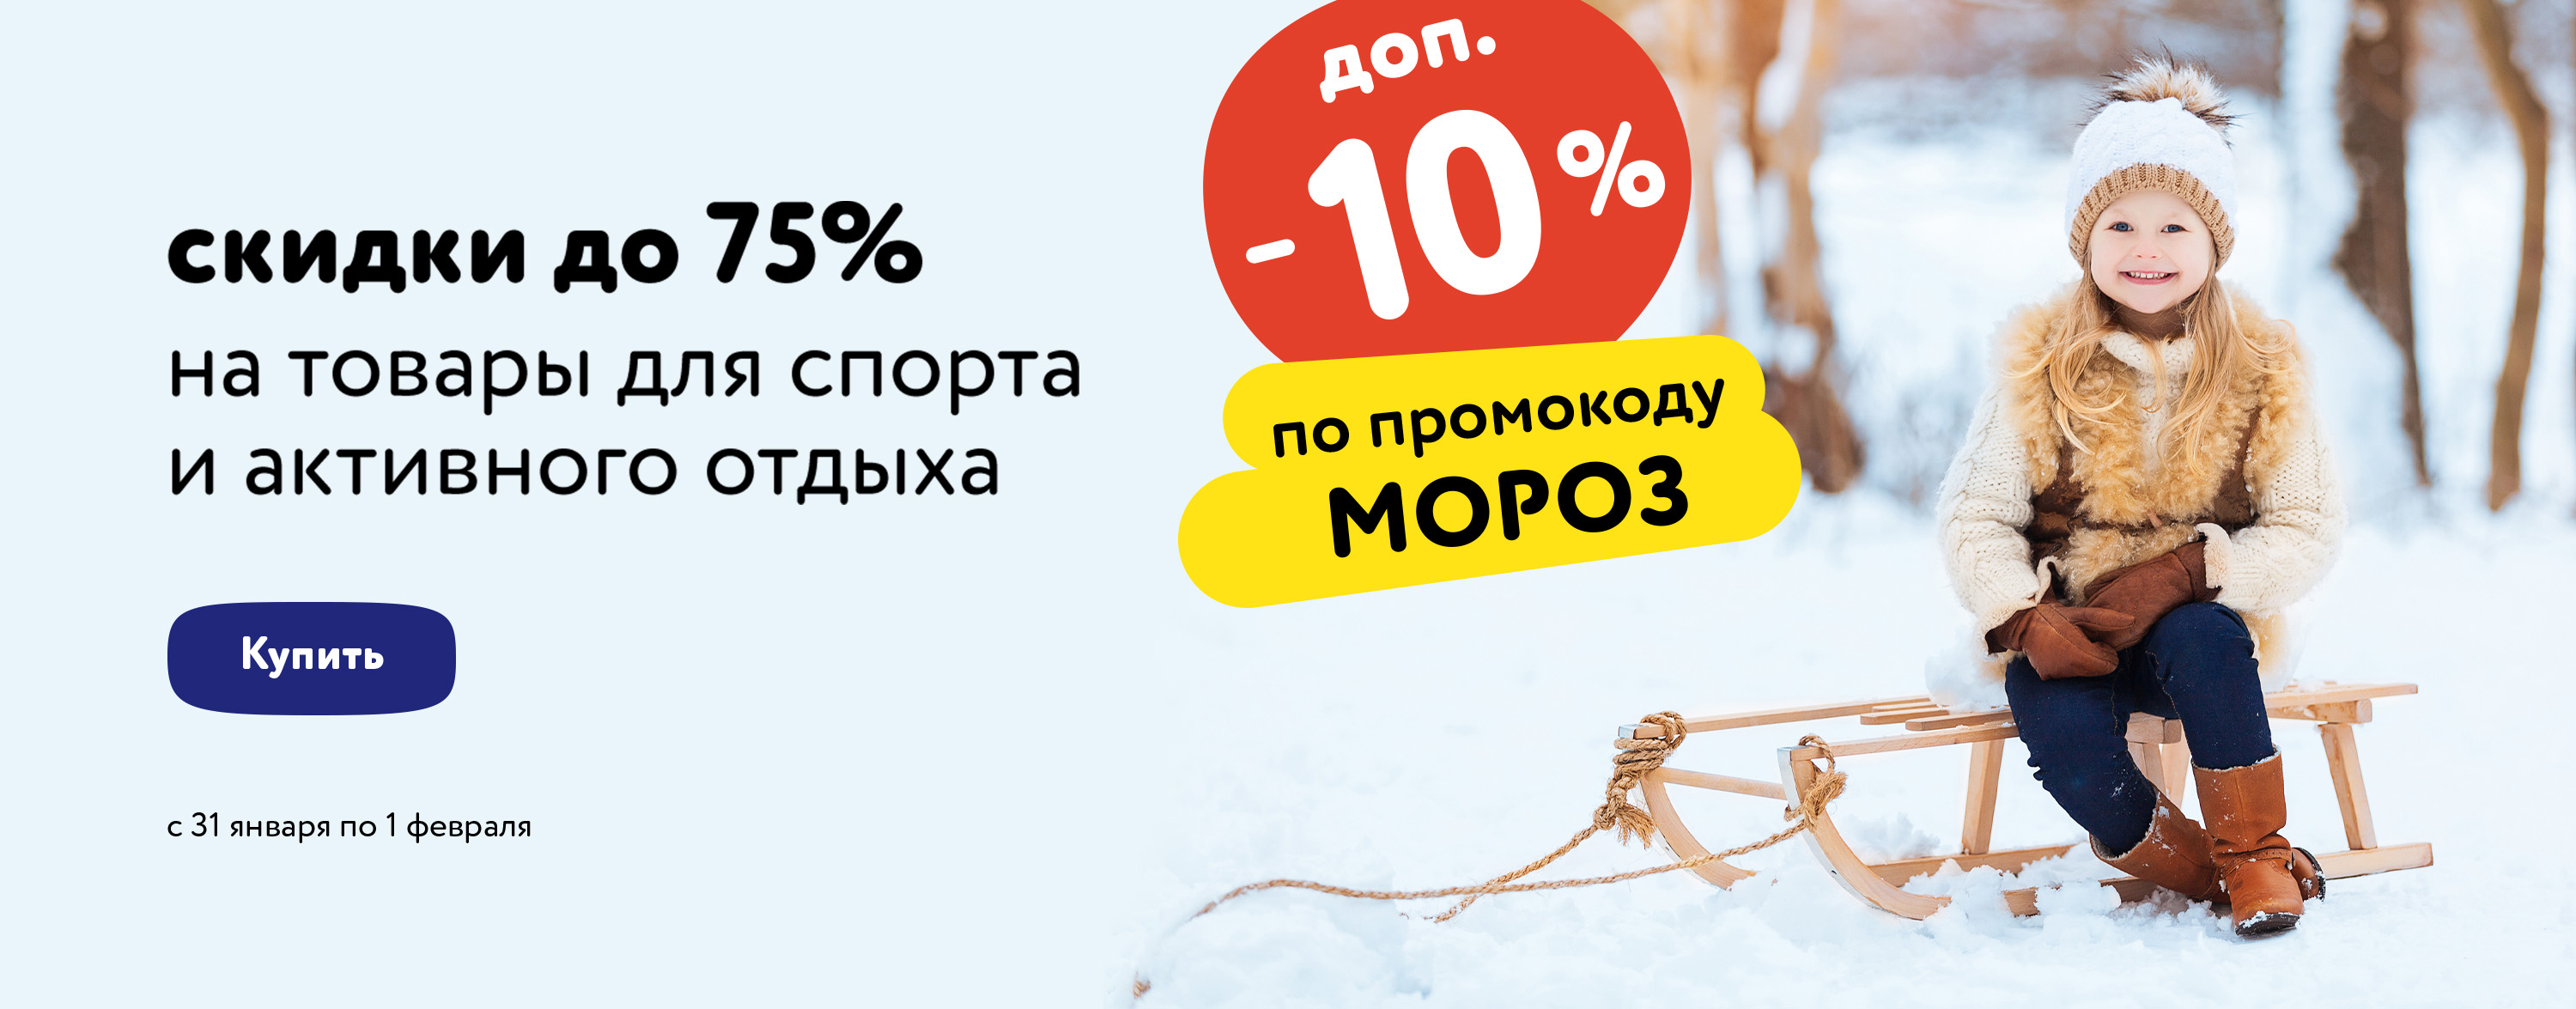 Доп. скидка 10% по промокоду на спортивные товары (МОРОЗ) (карусель+категории)